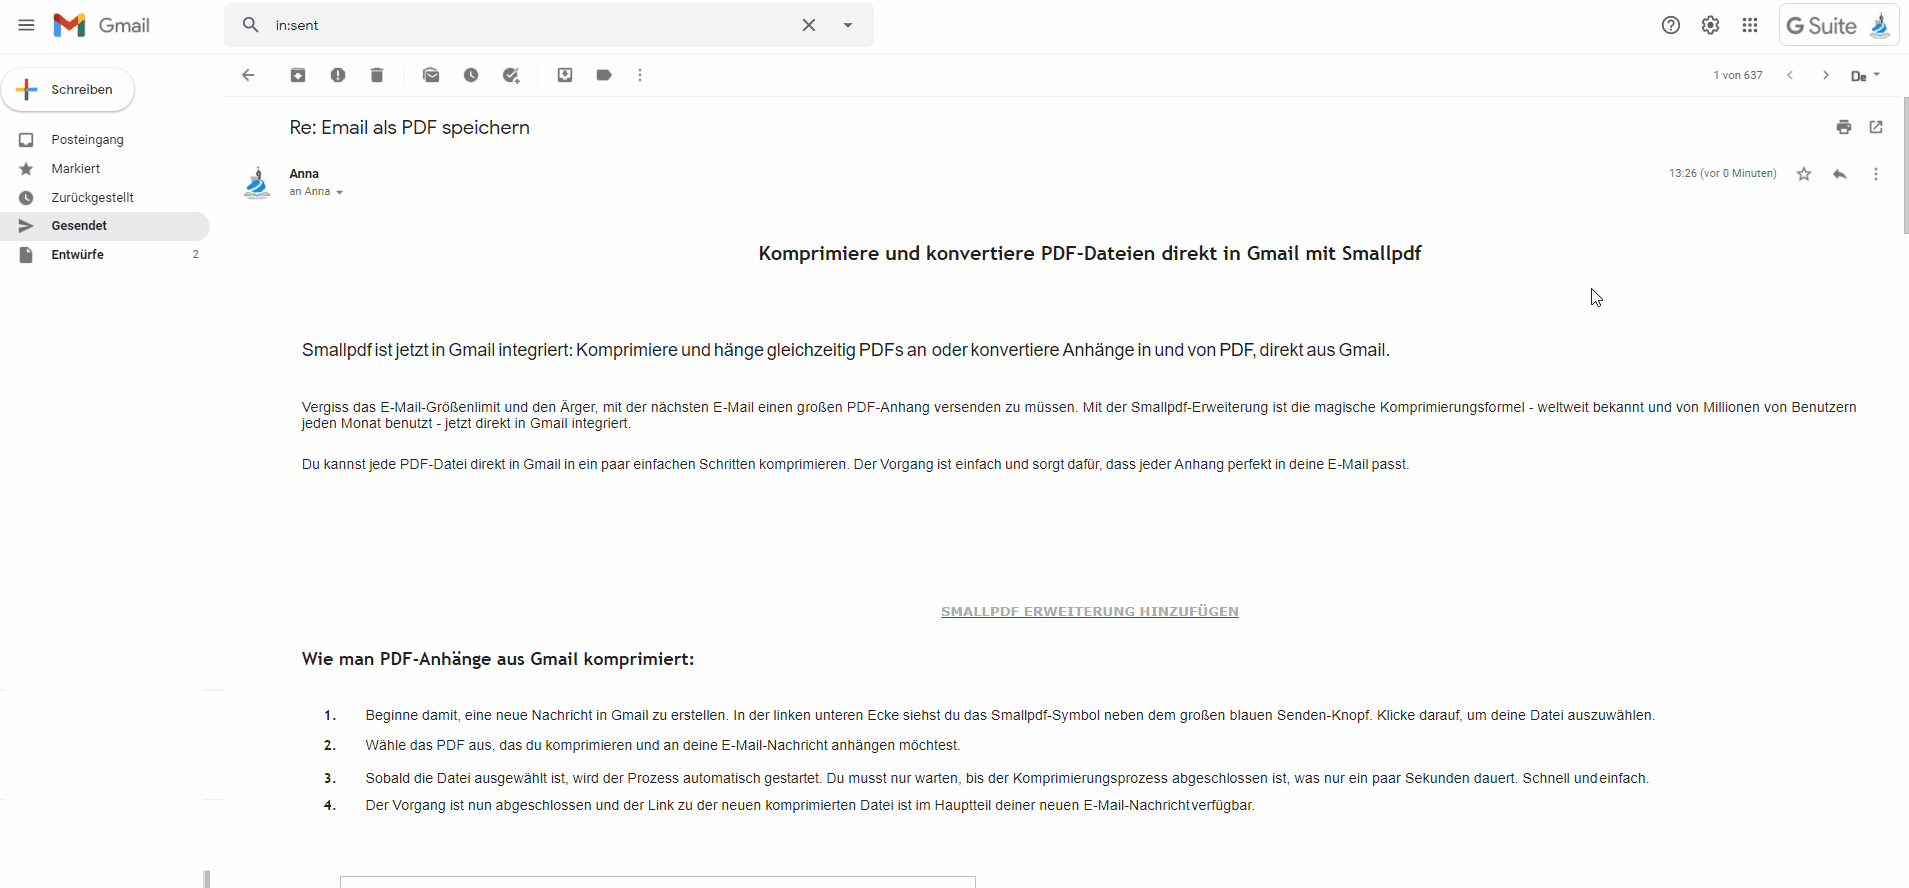 2020-09-24 - So speicherst du eine Outlook E-Mail als PDF